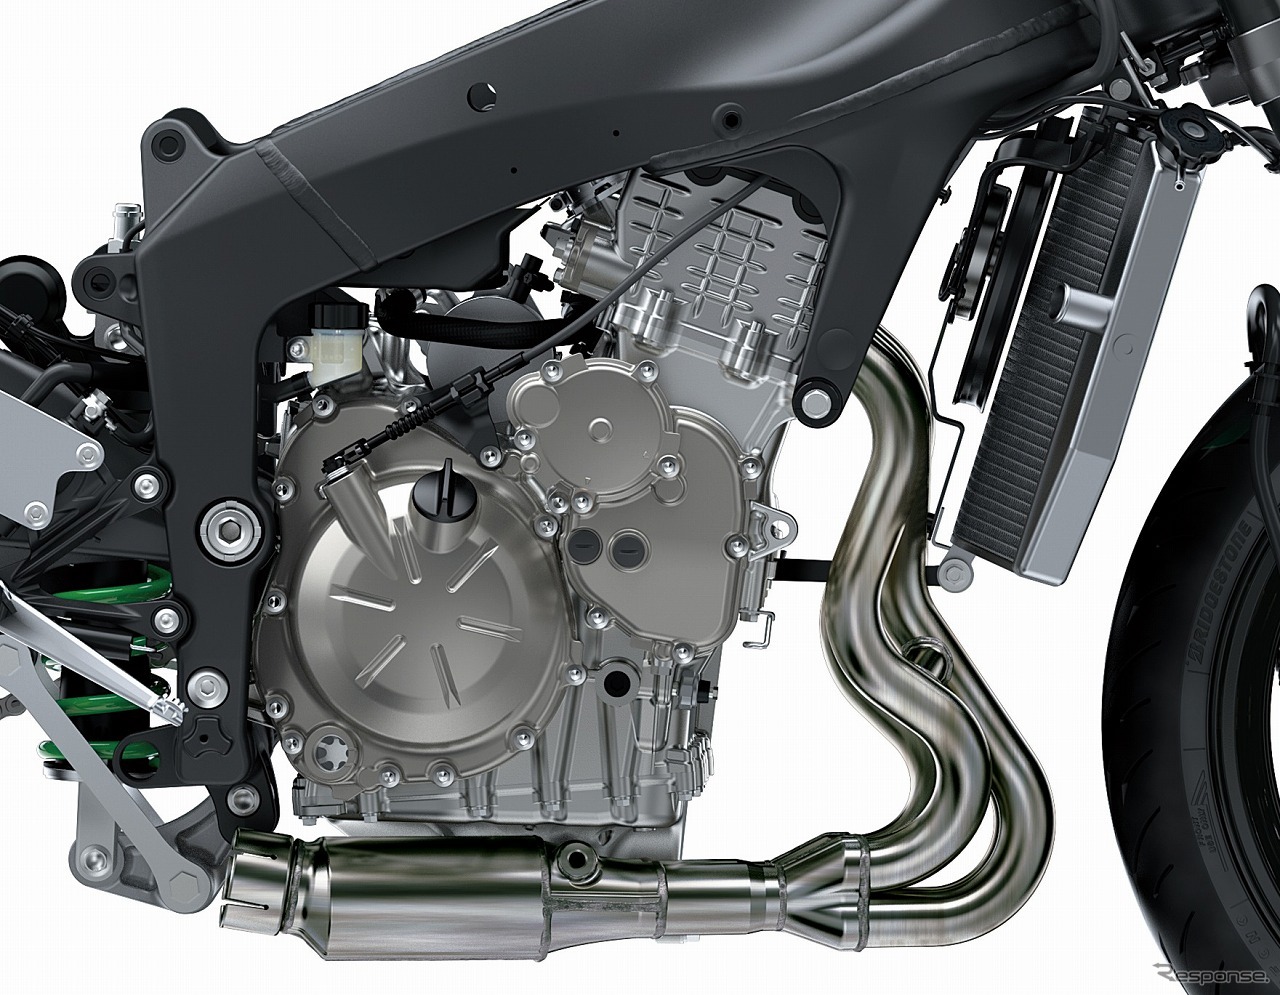 すべての回転域で優れた性能を発揮する水冷DOHC 4バルブ並列4気筒636ccエンジン